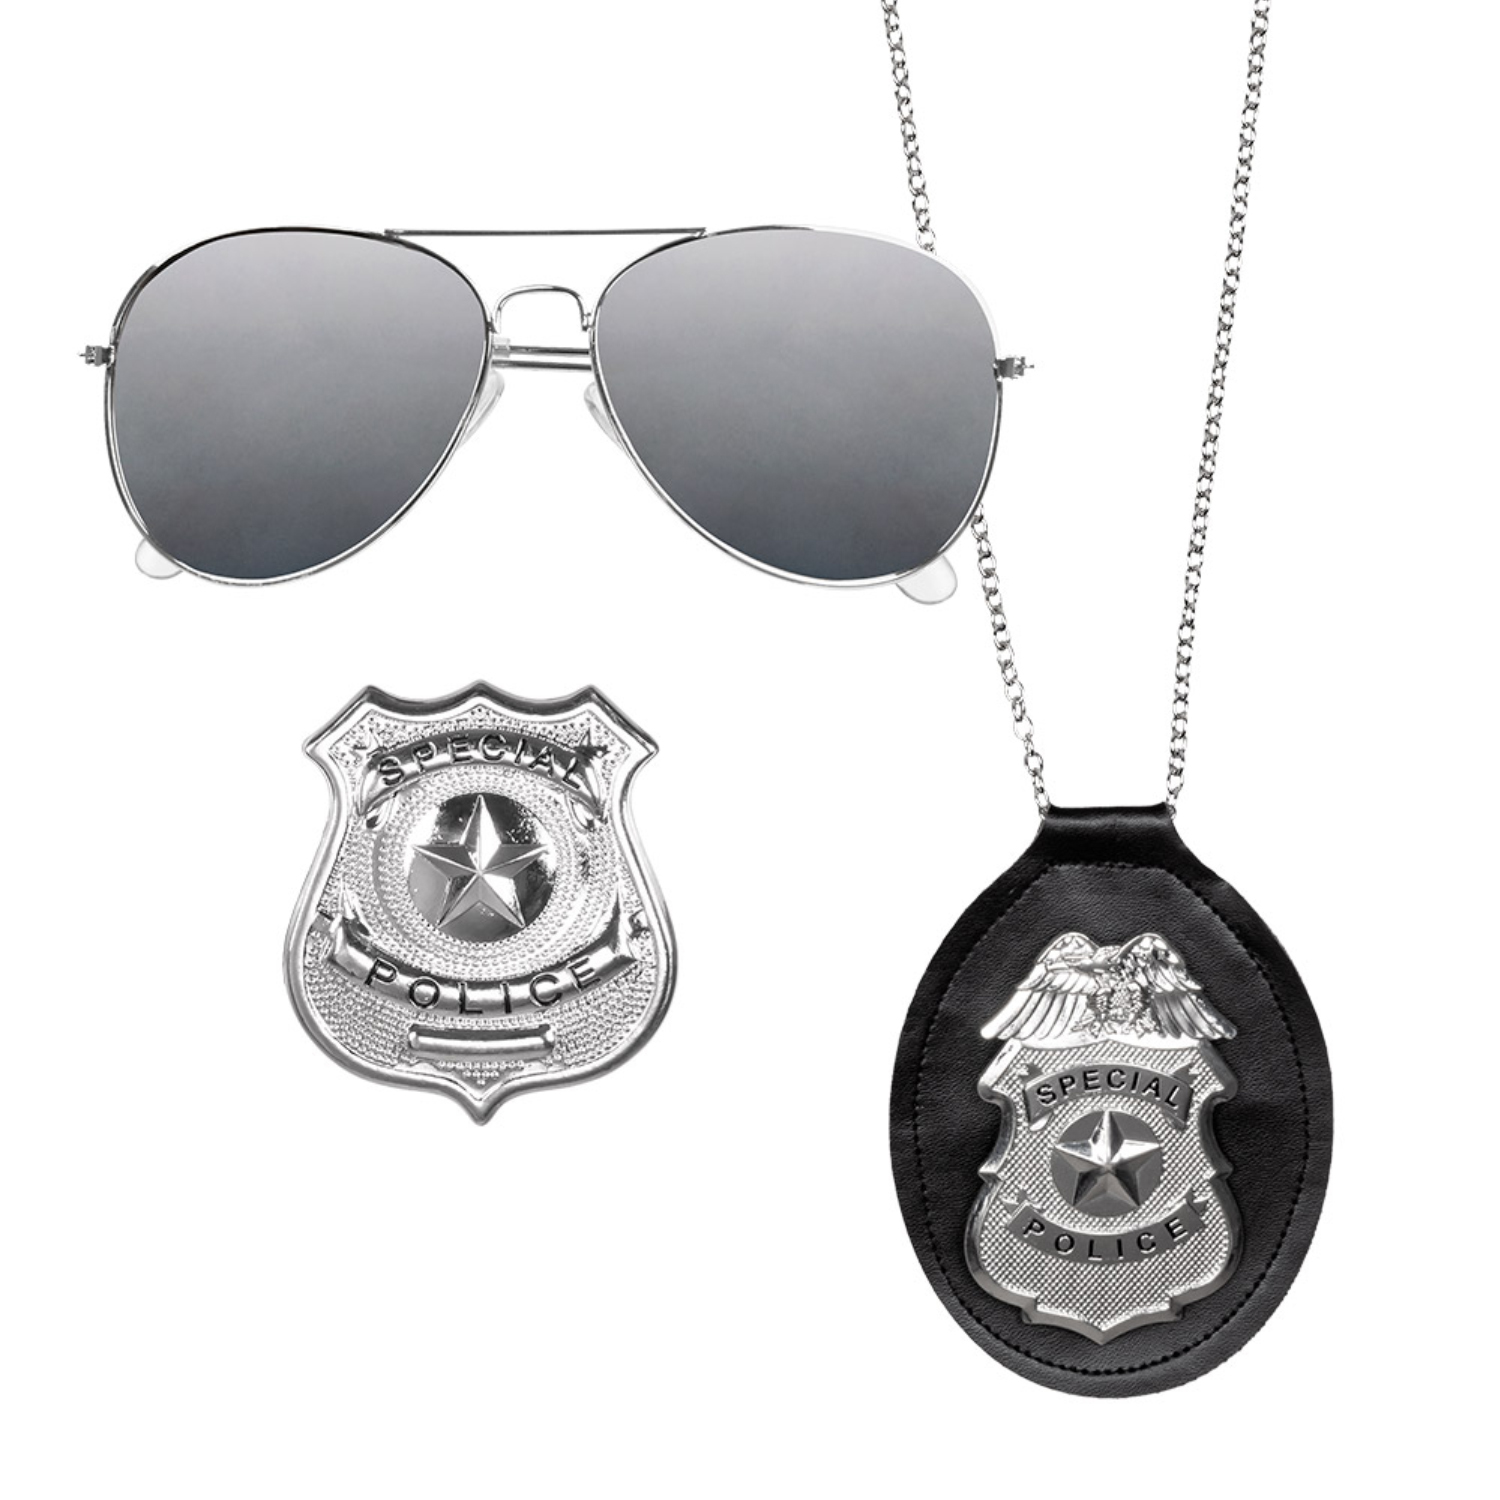 NEU Kostüm-Set Police Officer, mit Brille, Abzeichen und Marke